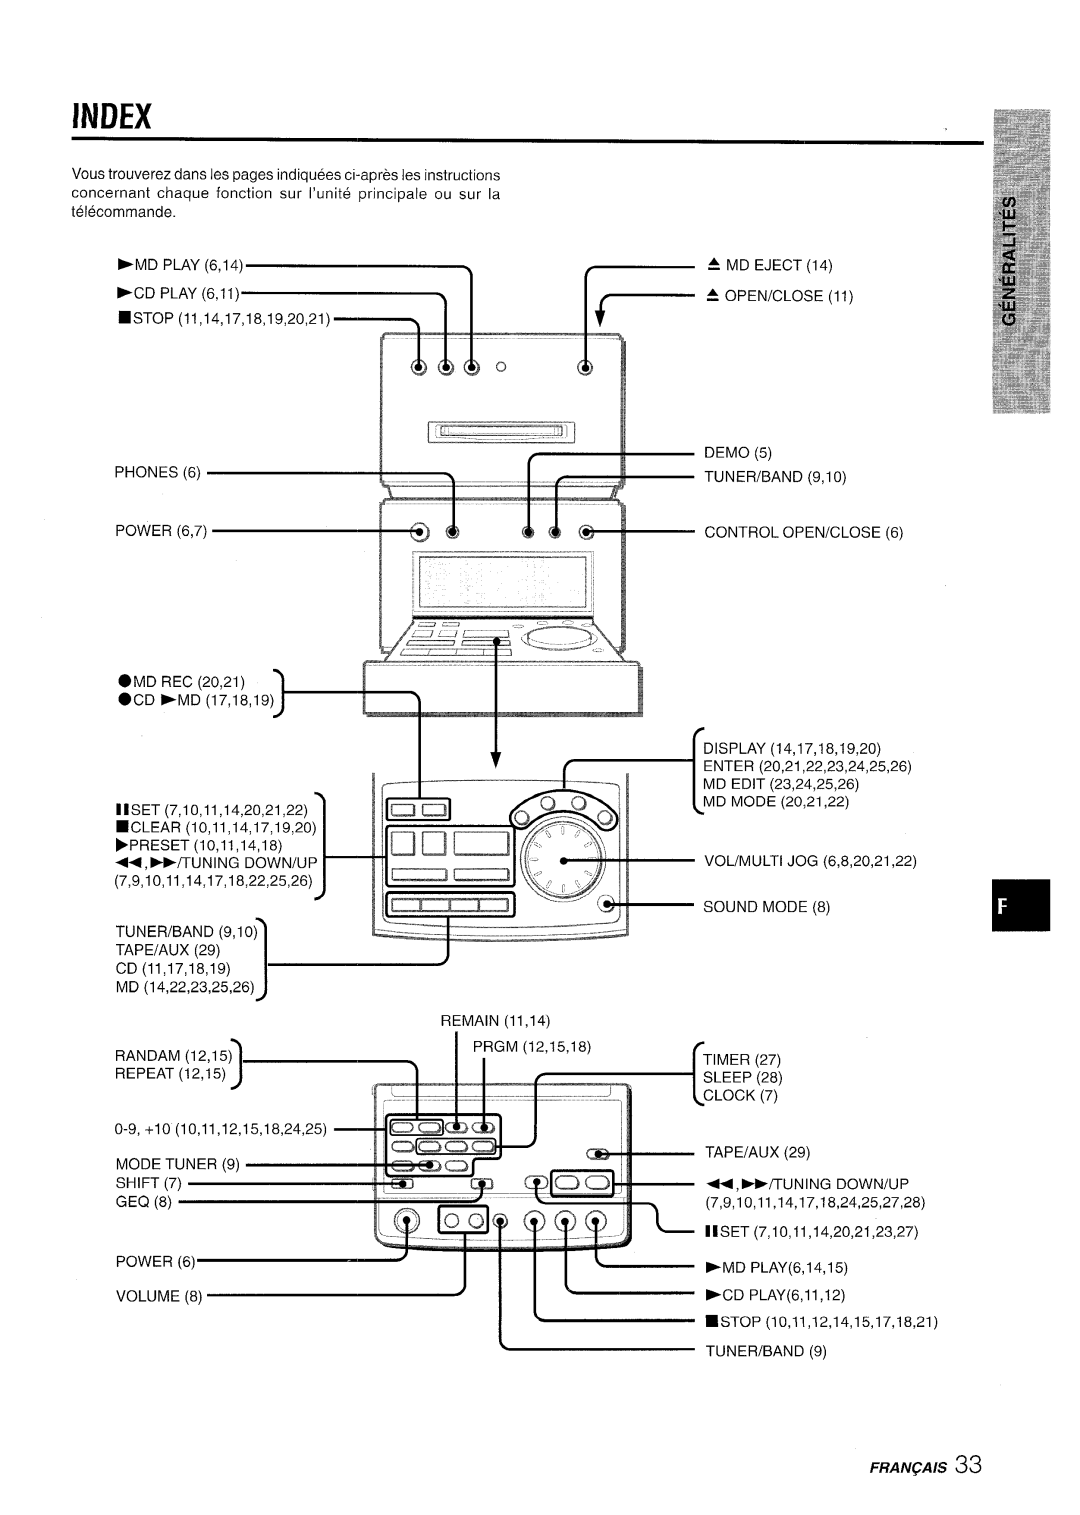 Aiwa XR-MD95 manual Mlmx, Fran~Ais 